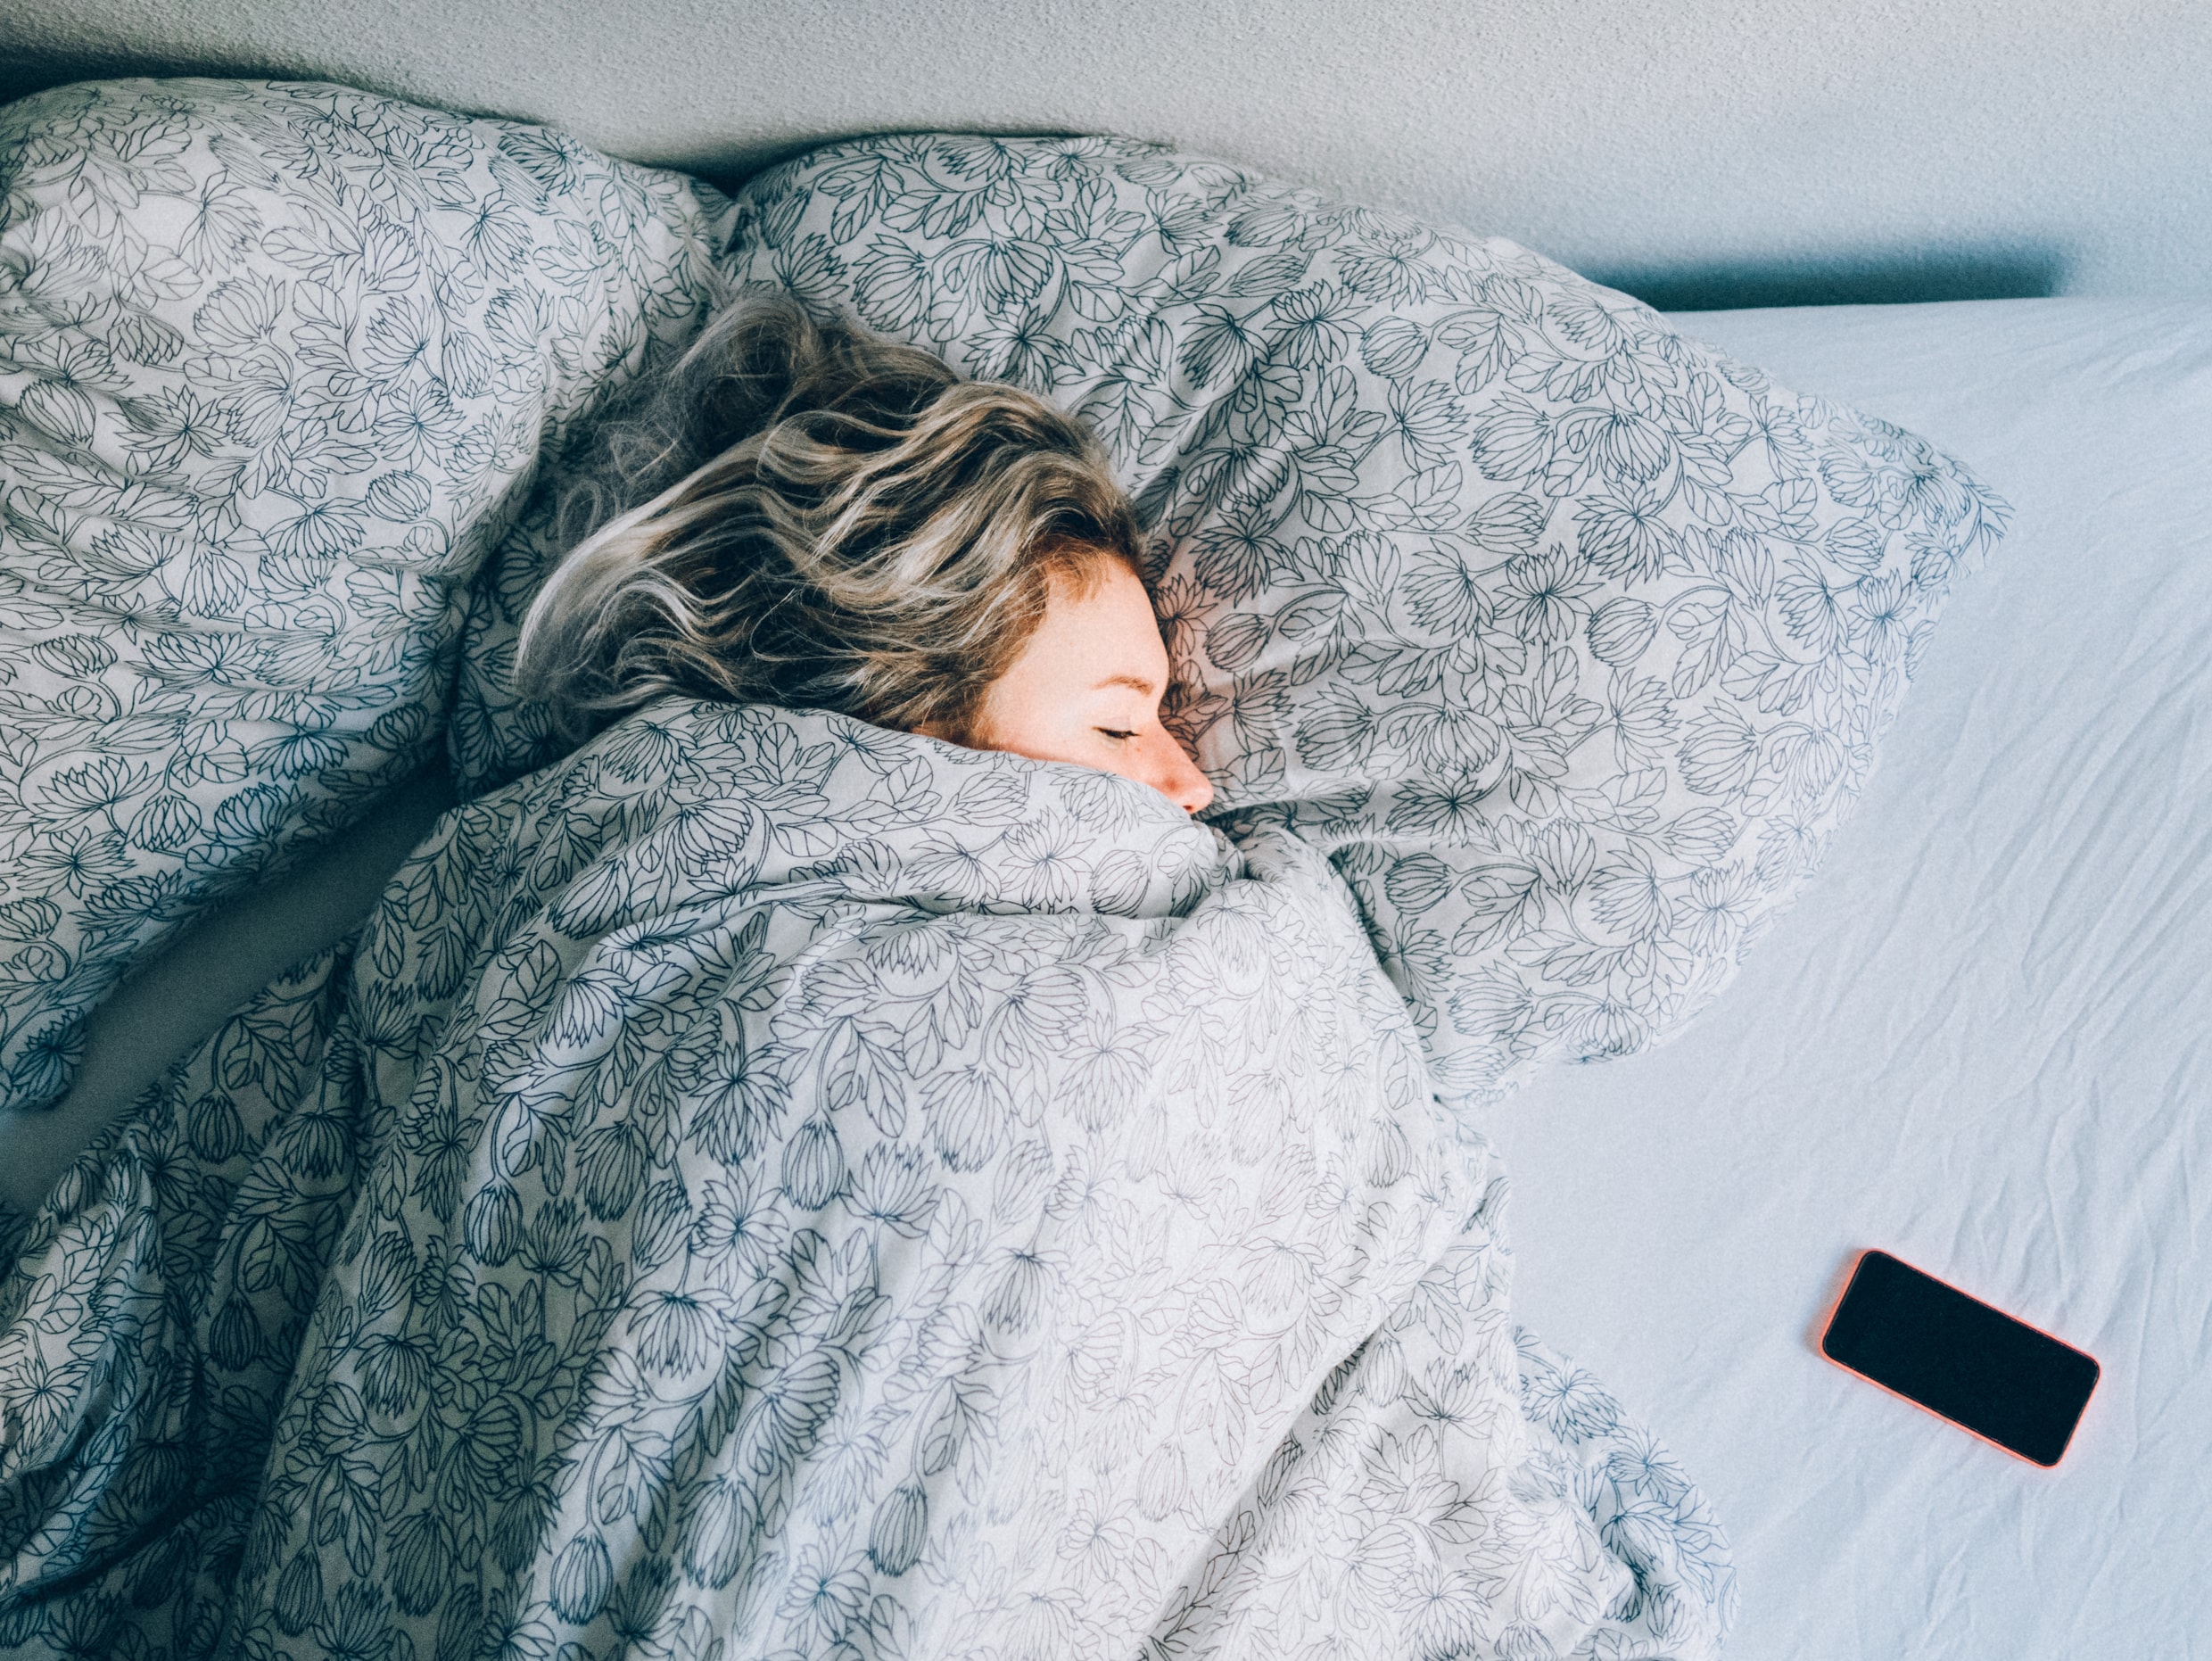 Slecht geslapen vannacht? ‘Probeer de 4-7-8 ademhalingsmethode eens’